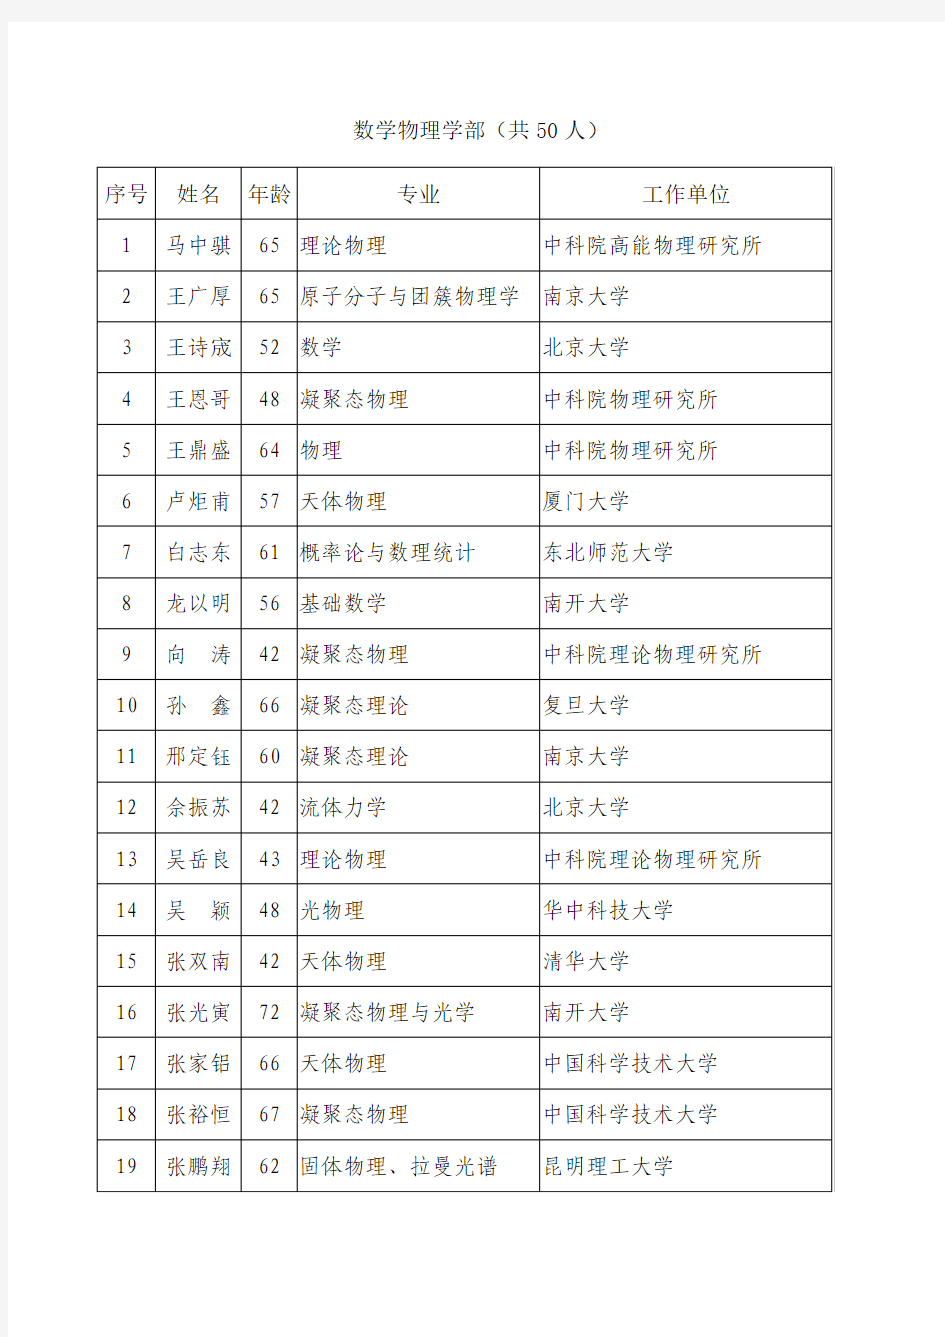 2005年中国科学院院士增选有效候选人名单